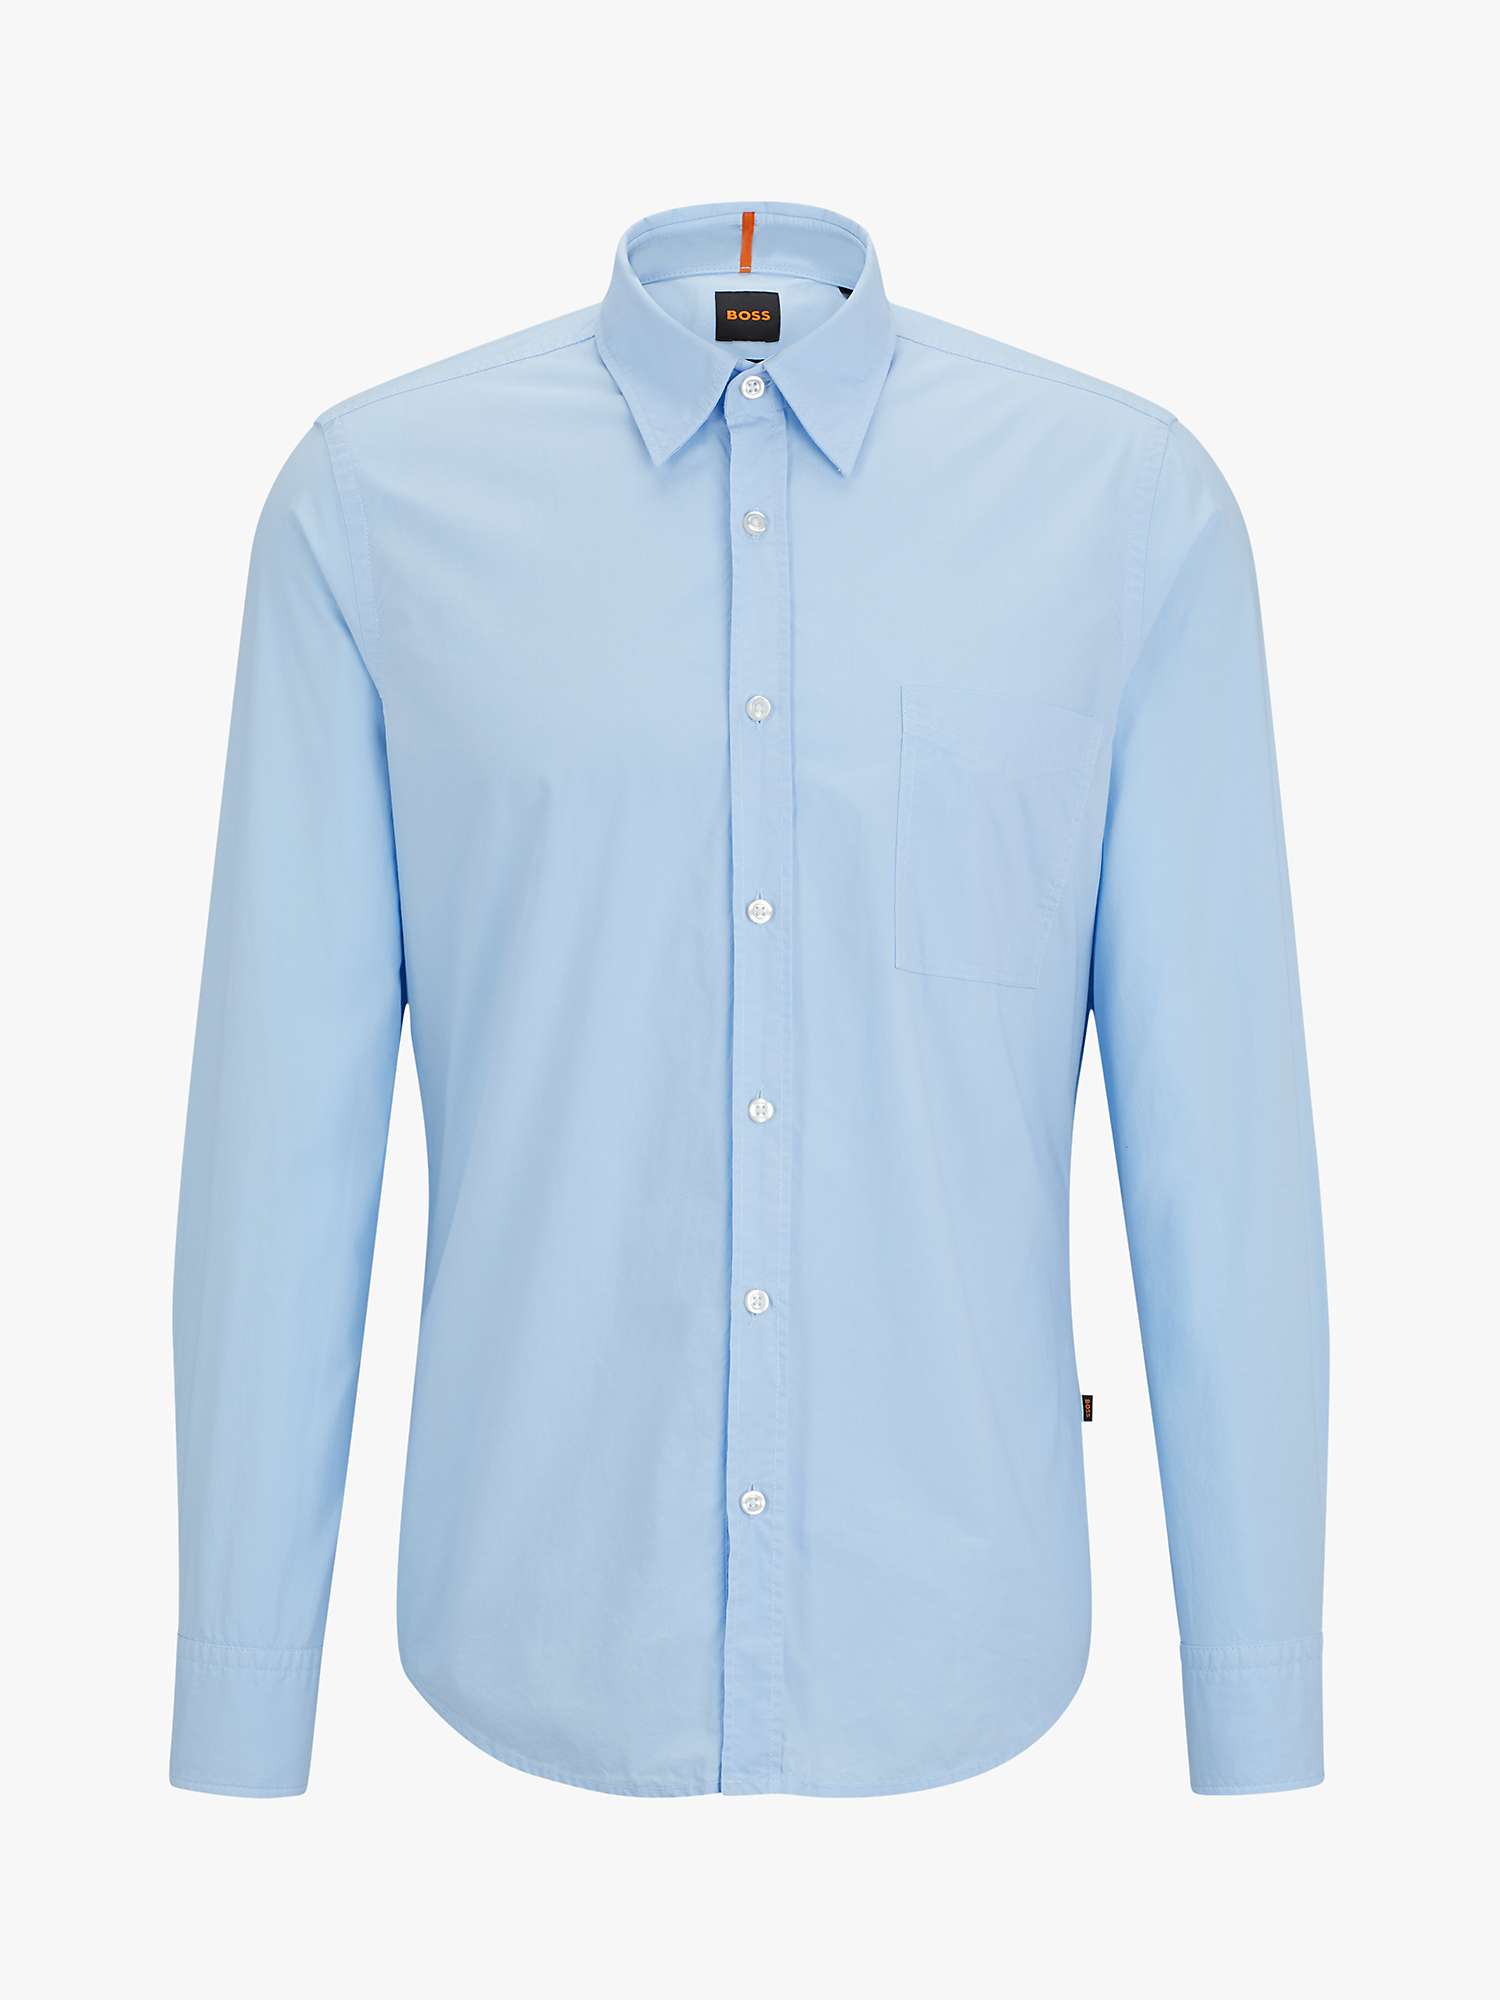 Buy BOSS Relegant Long Sleeve Shirt, Open Blue Online at johnlewis.com